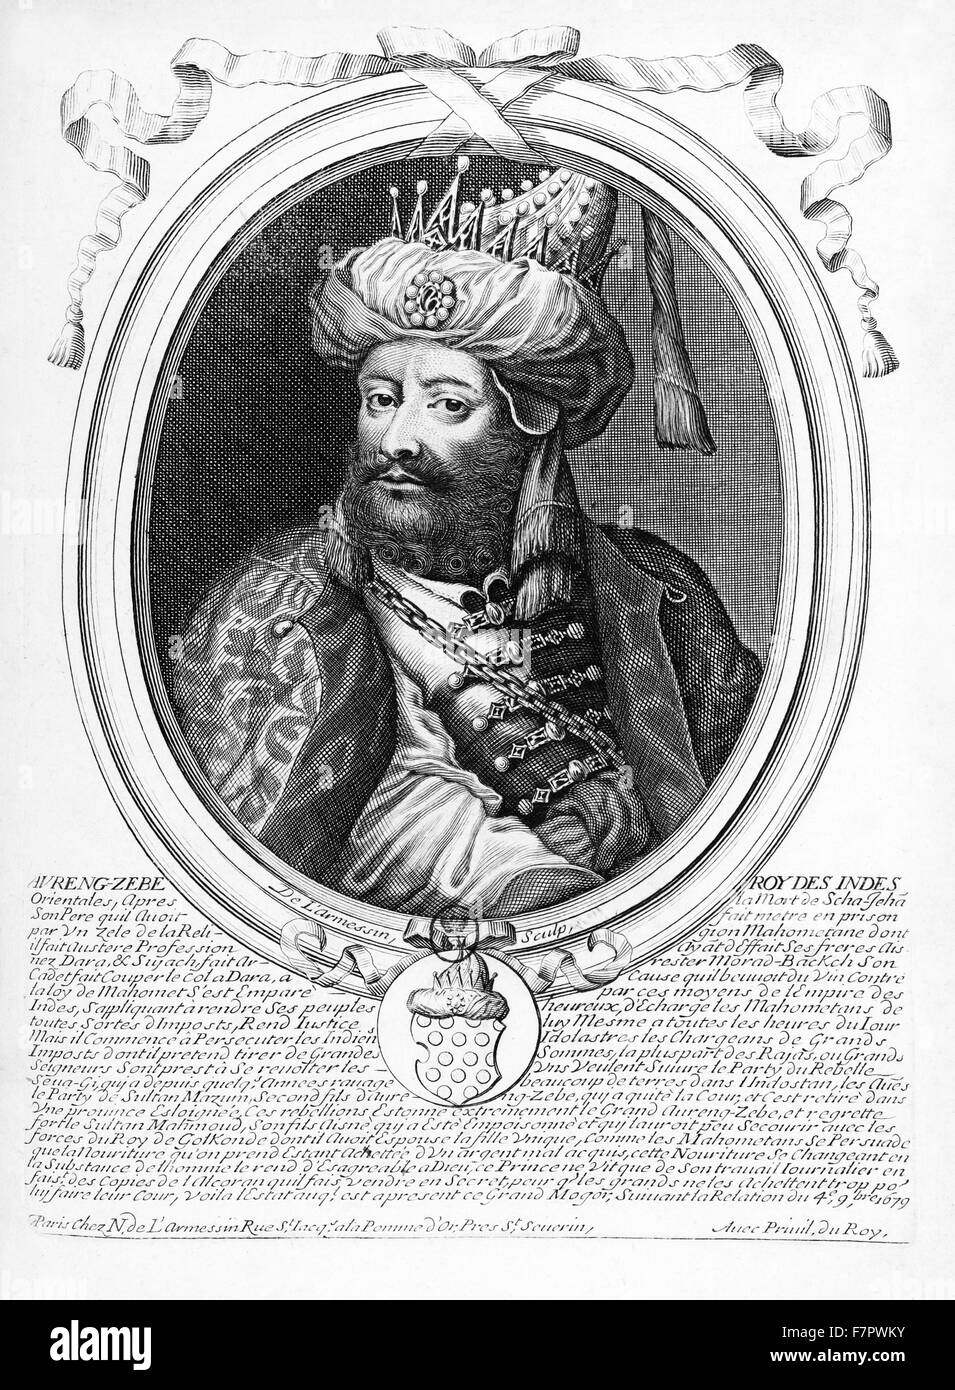 Abdul Muzaffar Muhi-ud-Din Muhammad Aurangzeb (14 octobre 1618 - 20 février 1707), communément appelé Aurangzeb Alamgir et par son titre impérial Alamgir ('world-Icon Seizer' ou 'univers-Icon Seizer') et désignés sous l'Aurangzeb était le sixième empereur moghol et statué sur la plus grande partie du sous-continent indien au cours de certaines parties de son règne. Son règne a duré 49 ans de 1658 jusqu'à sa mort en 1707. Banque D'Images